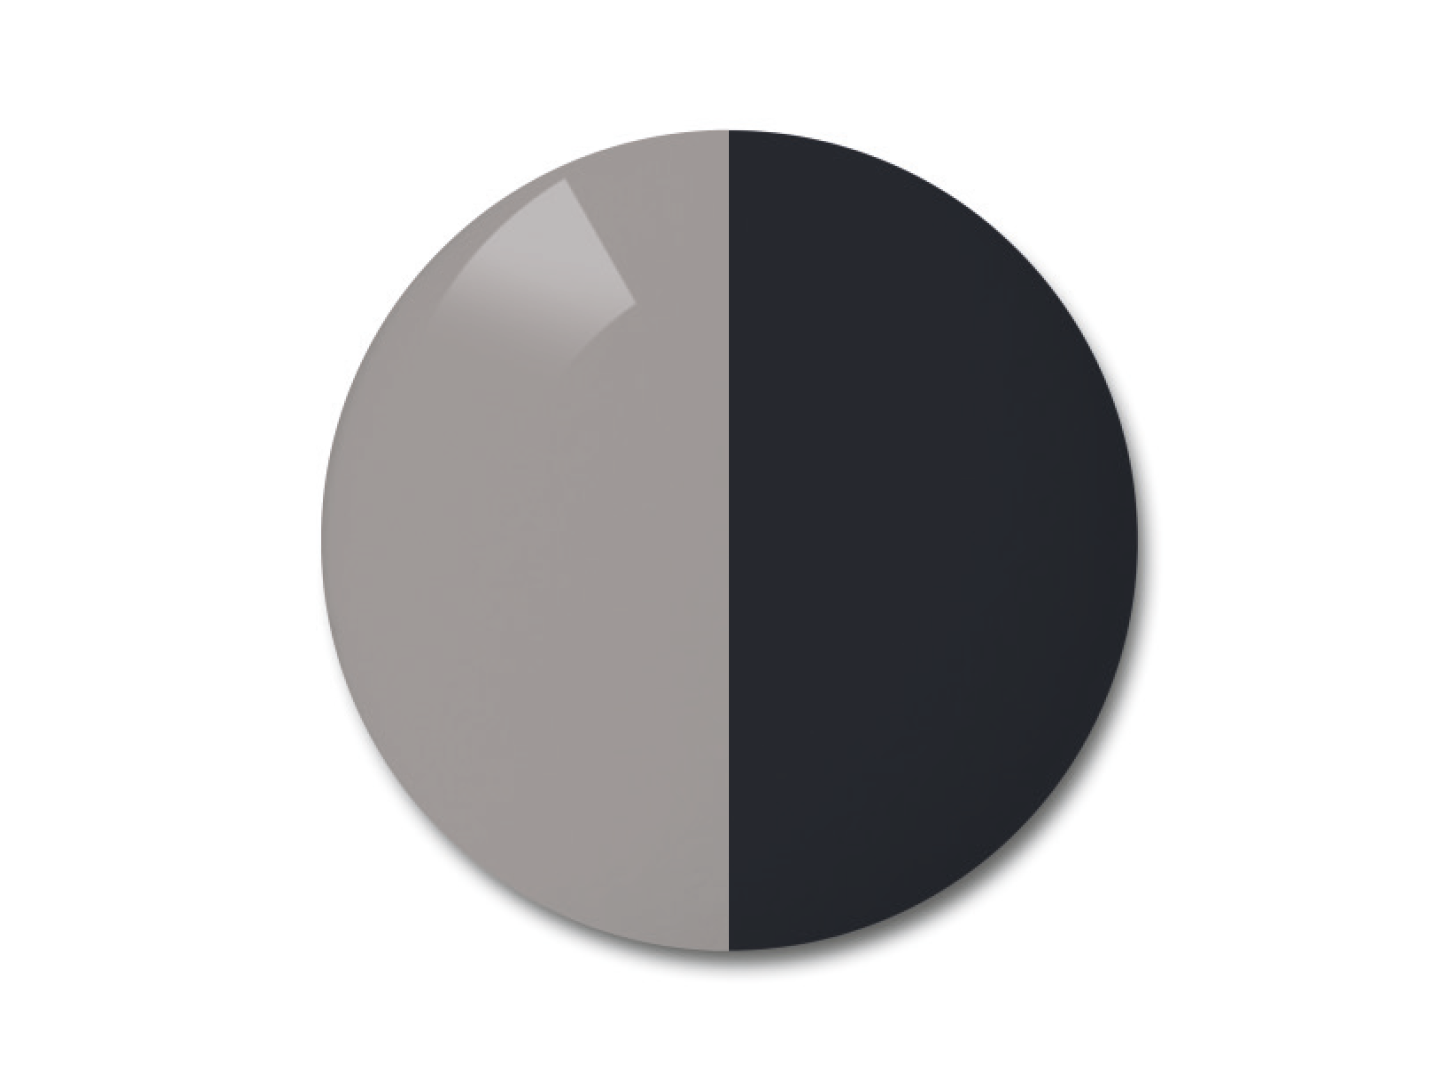 자이스 어댑티브선 변색 렌즈 중 단색 그레이 색상을 보여주는 이미지